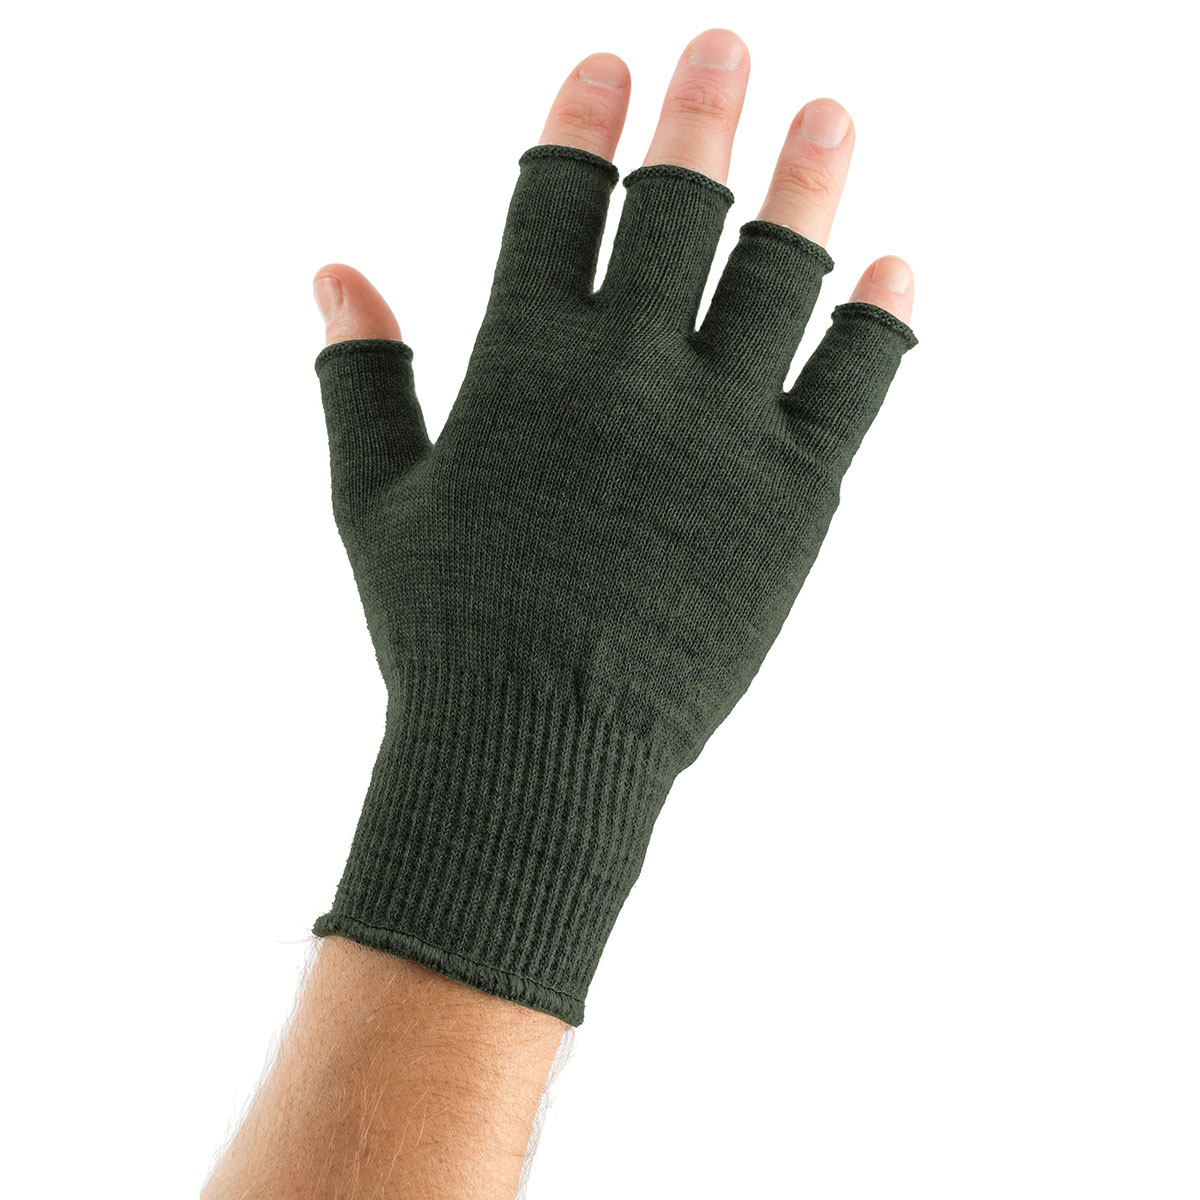 https://edz.co.uk/wp-content/uploads/2014/01/Gloves-Fingerless-Merino-Green.jpg